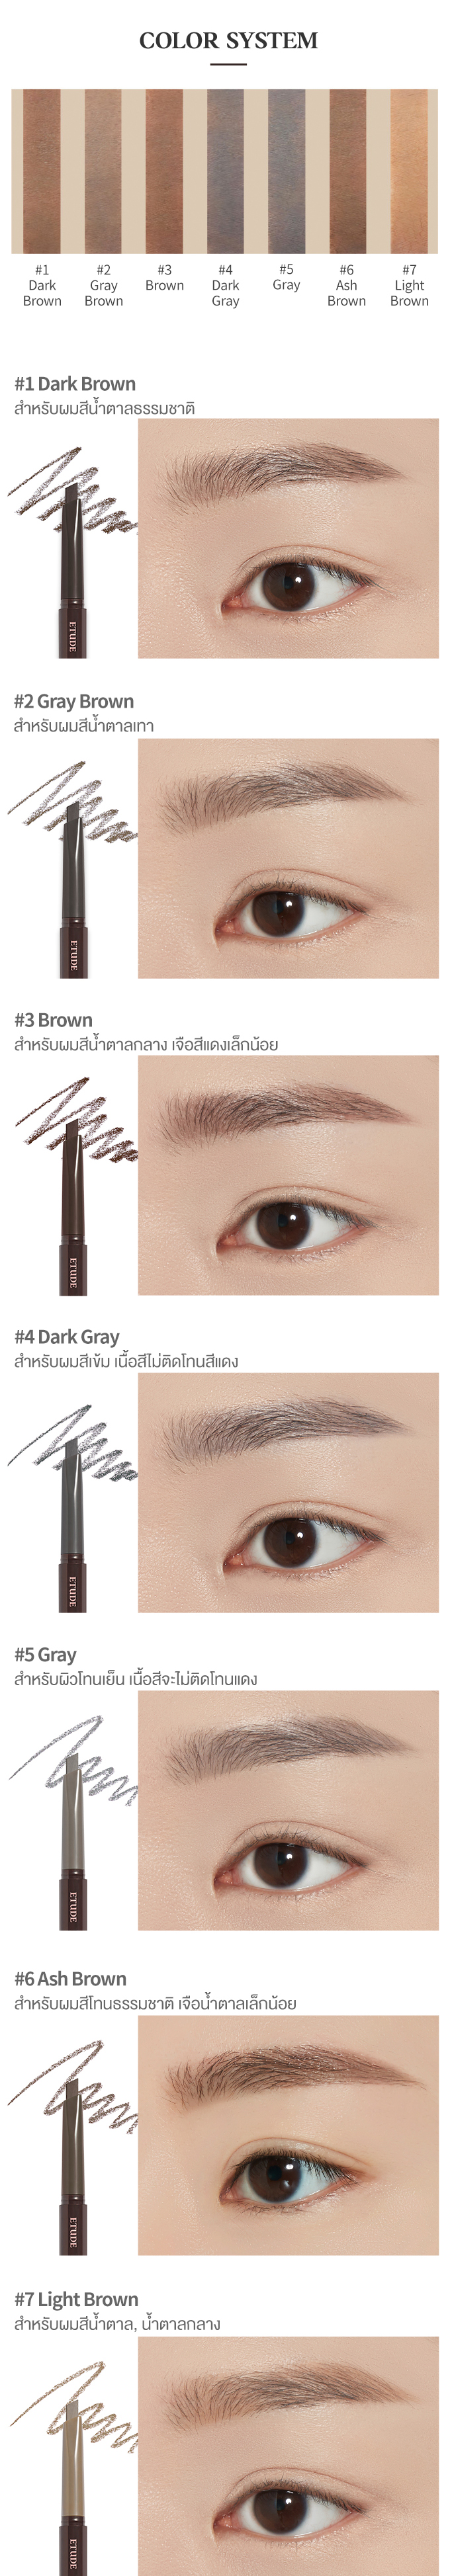 drawing_eye_brow_21ad_sub_Thai03